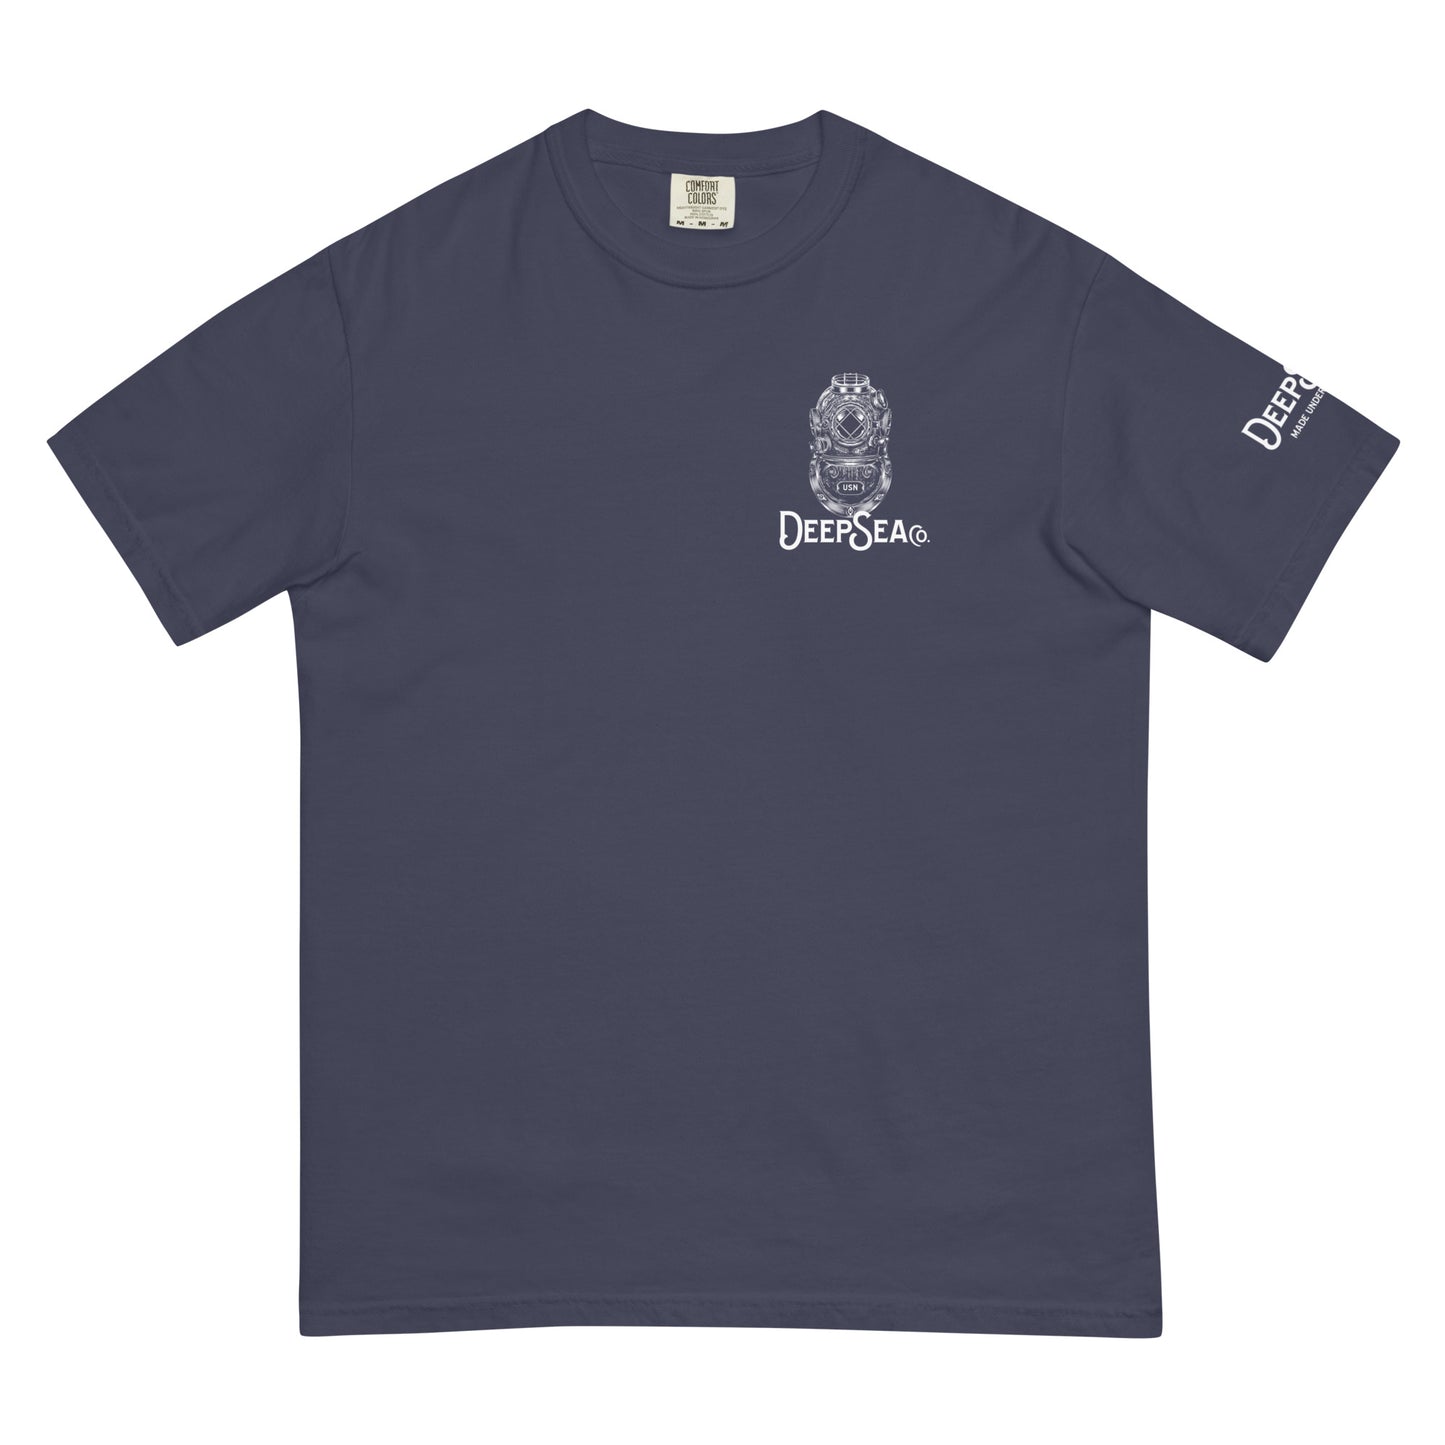 MKV DeepSea Co. Men’s garment-dyed heavyweight t-shirt